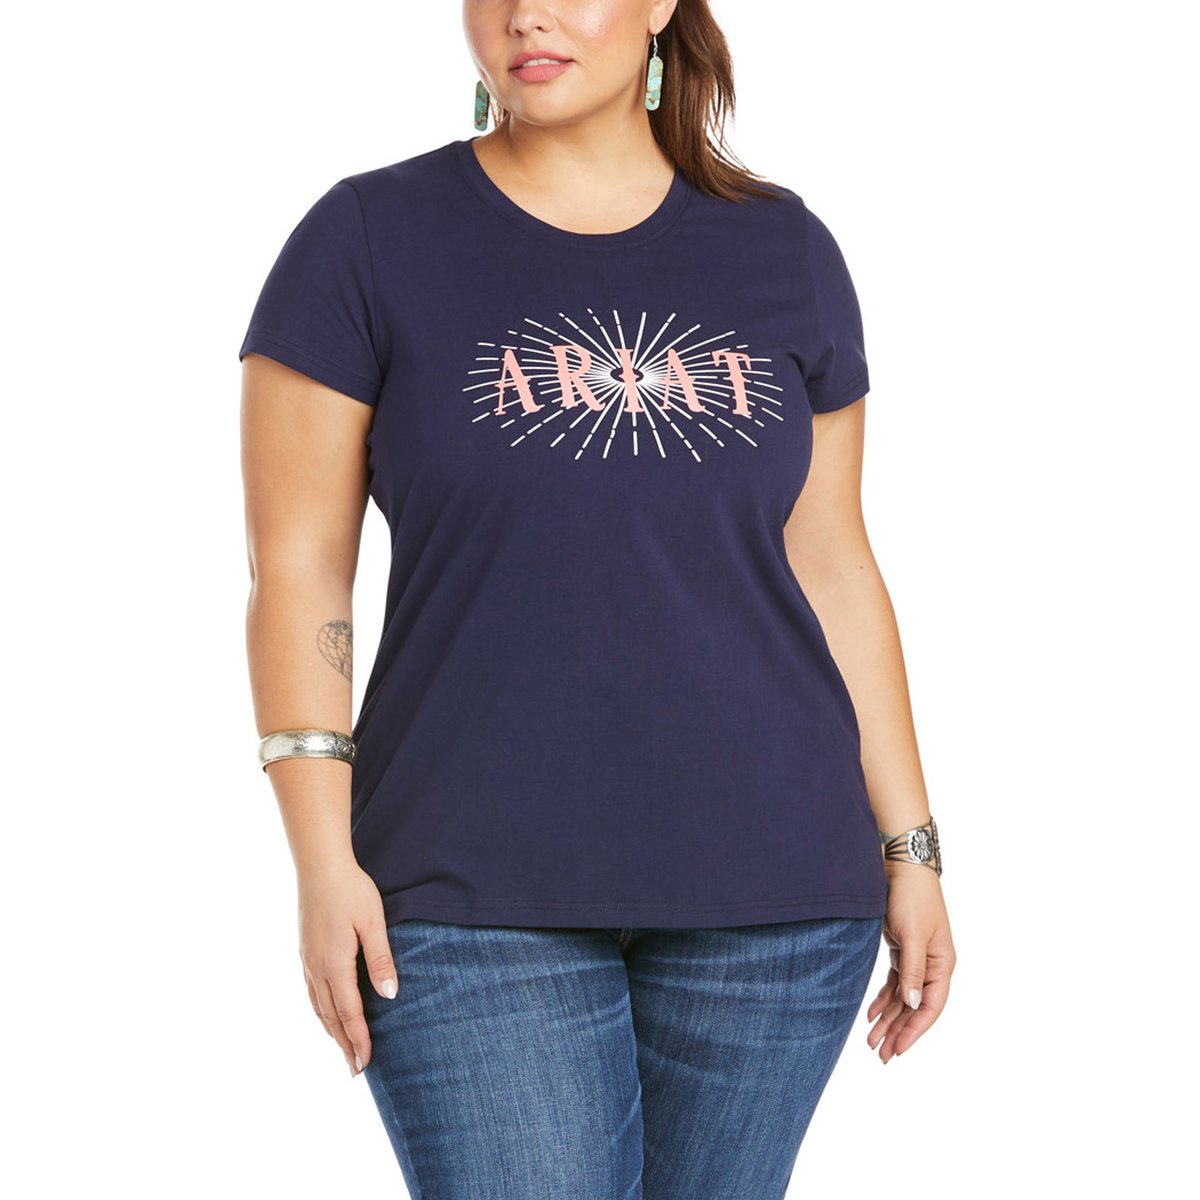 Ariat Women’s Real Sundown T-Shirt – Peacoat Navy